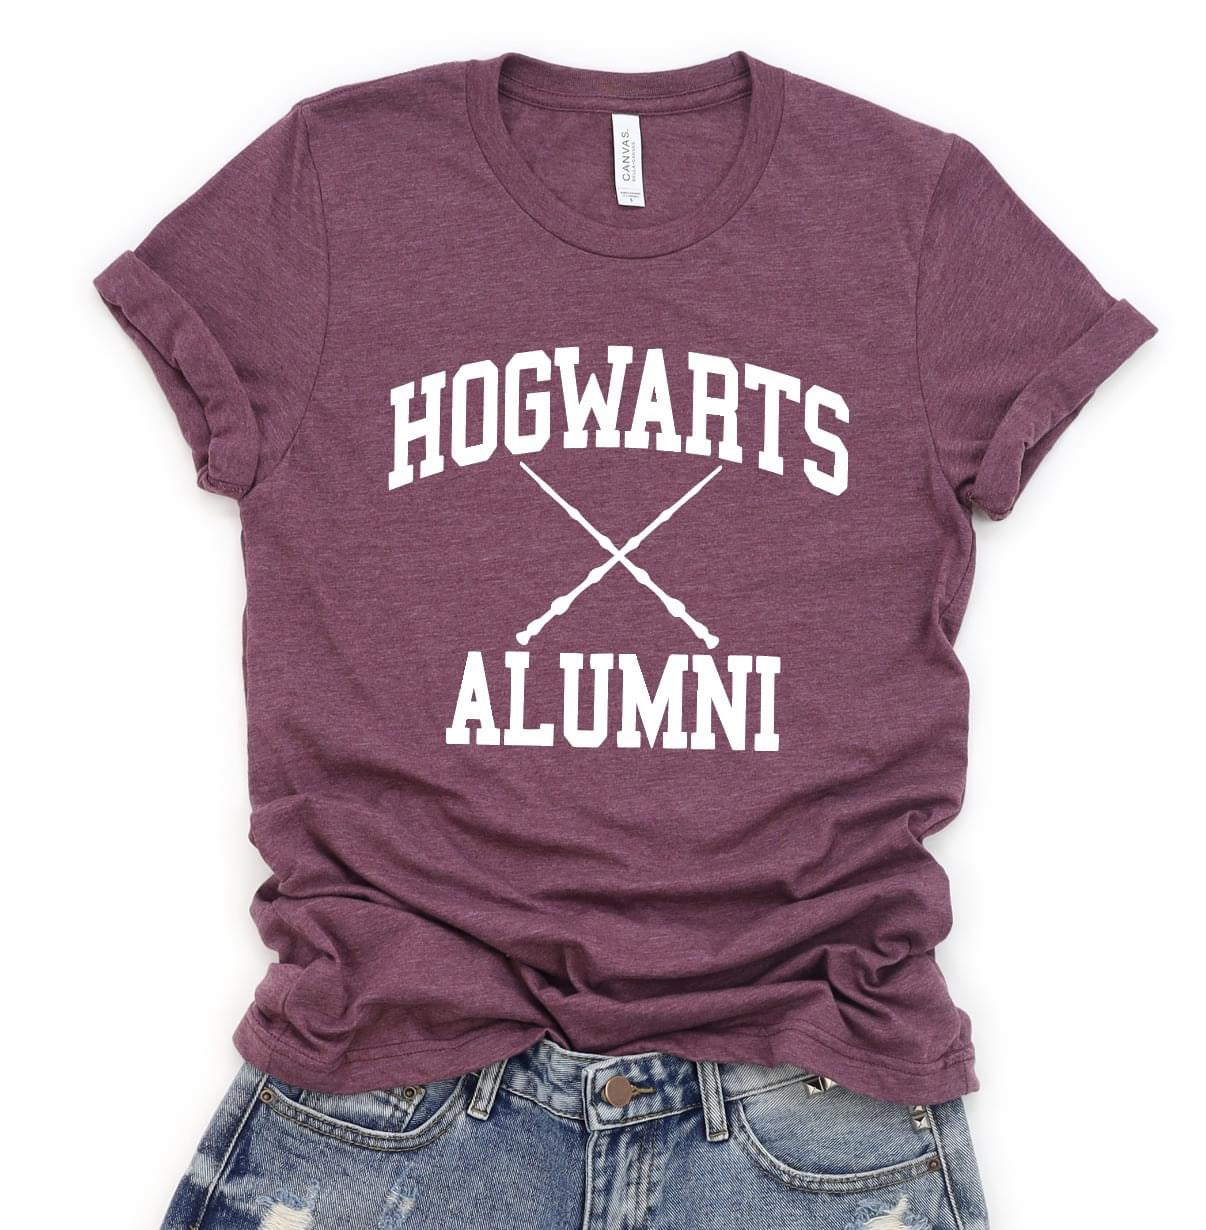 Hogwarts Alumni Tee